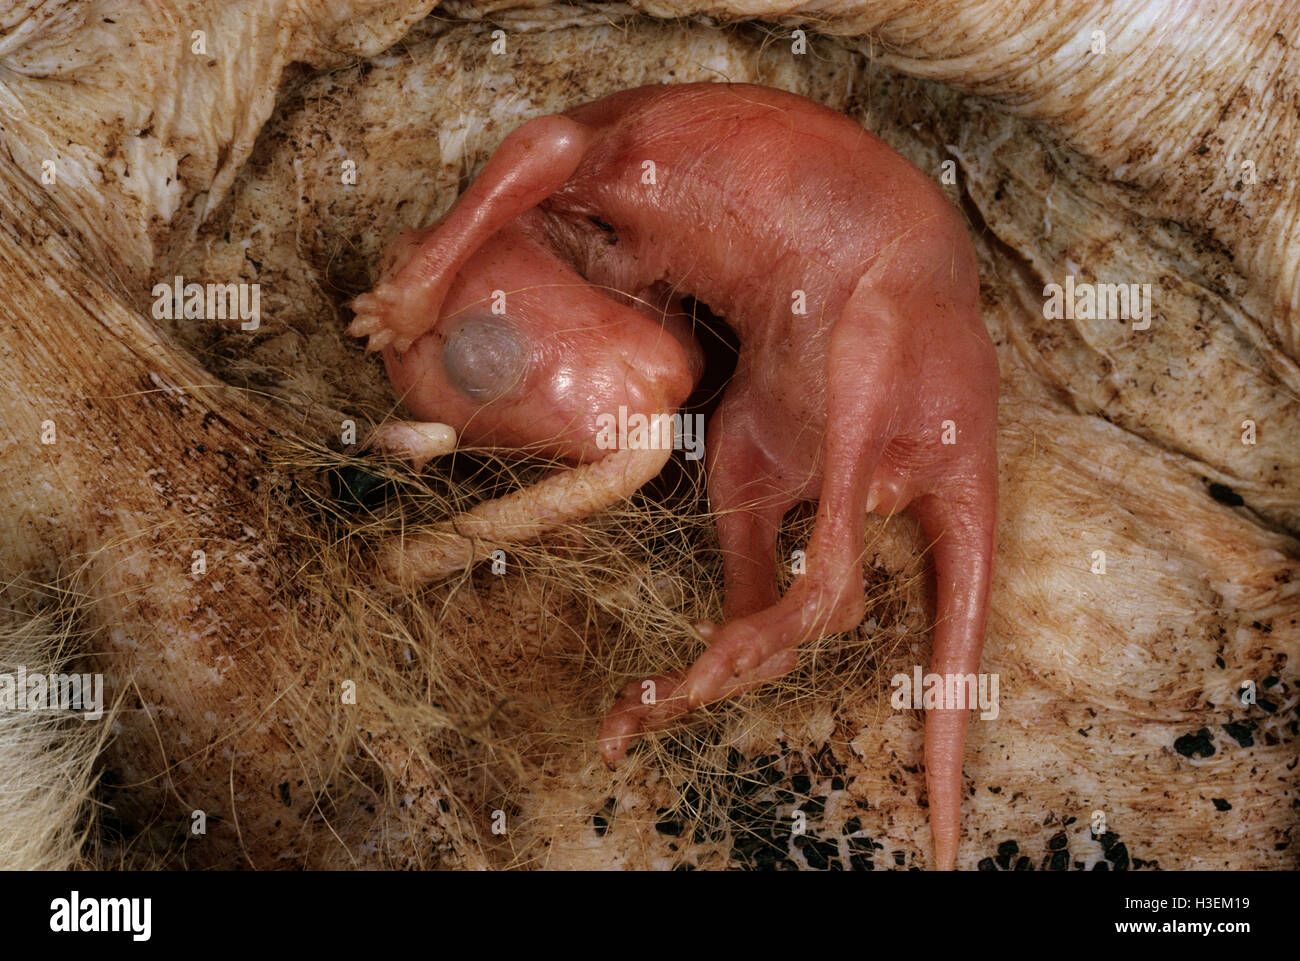 Riproduzione macropod (macropus sp.), neonato nella sacca a venti giorni dopo la nascita, attaccato al capezzolo. australia Foto Stock